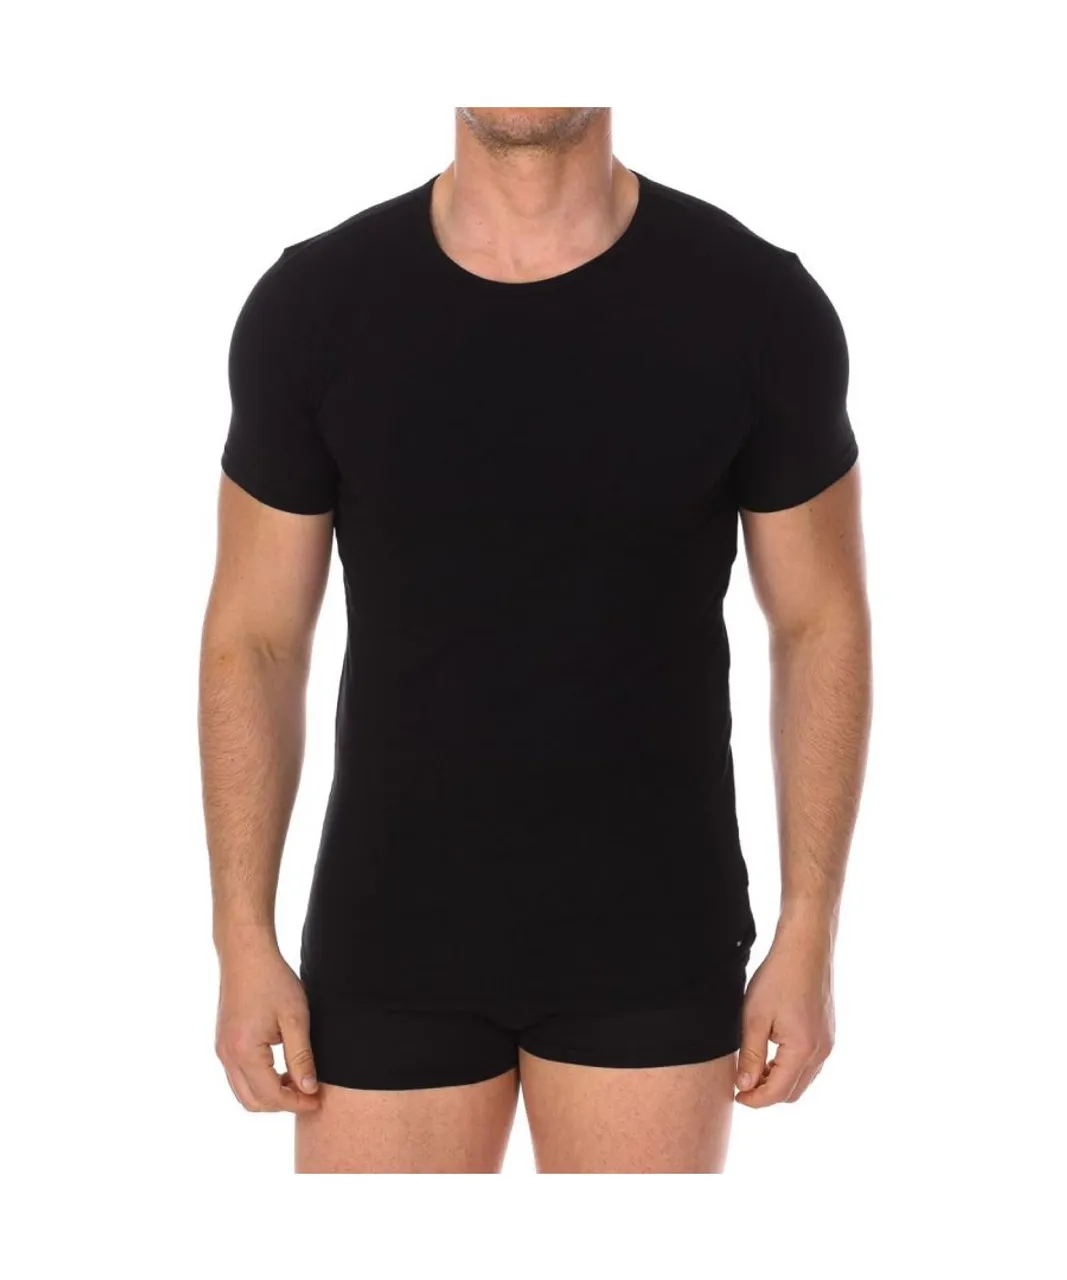 Tommy Hilfiger Mens Pack-3 Short-sleeved undershirts 2S87905187 men - Black